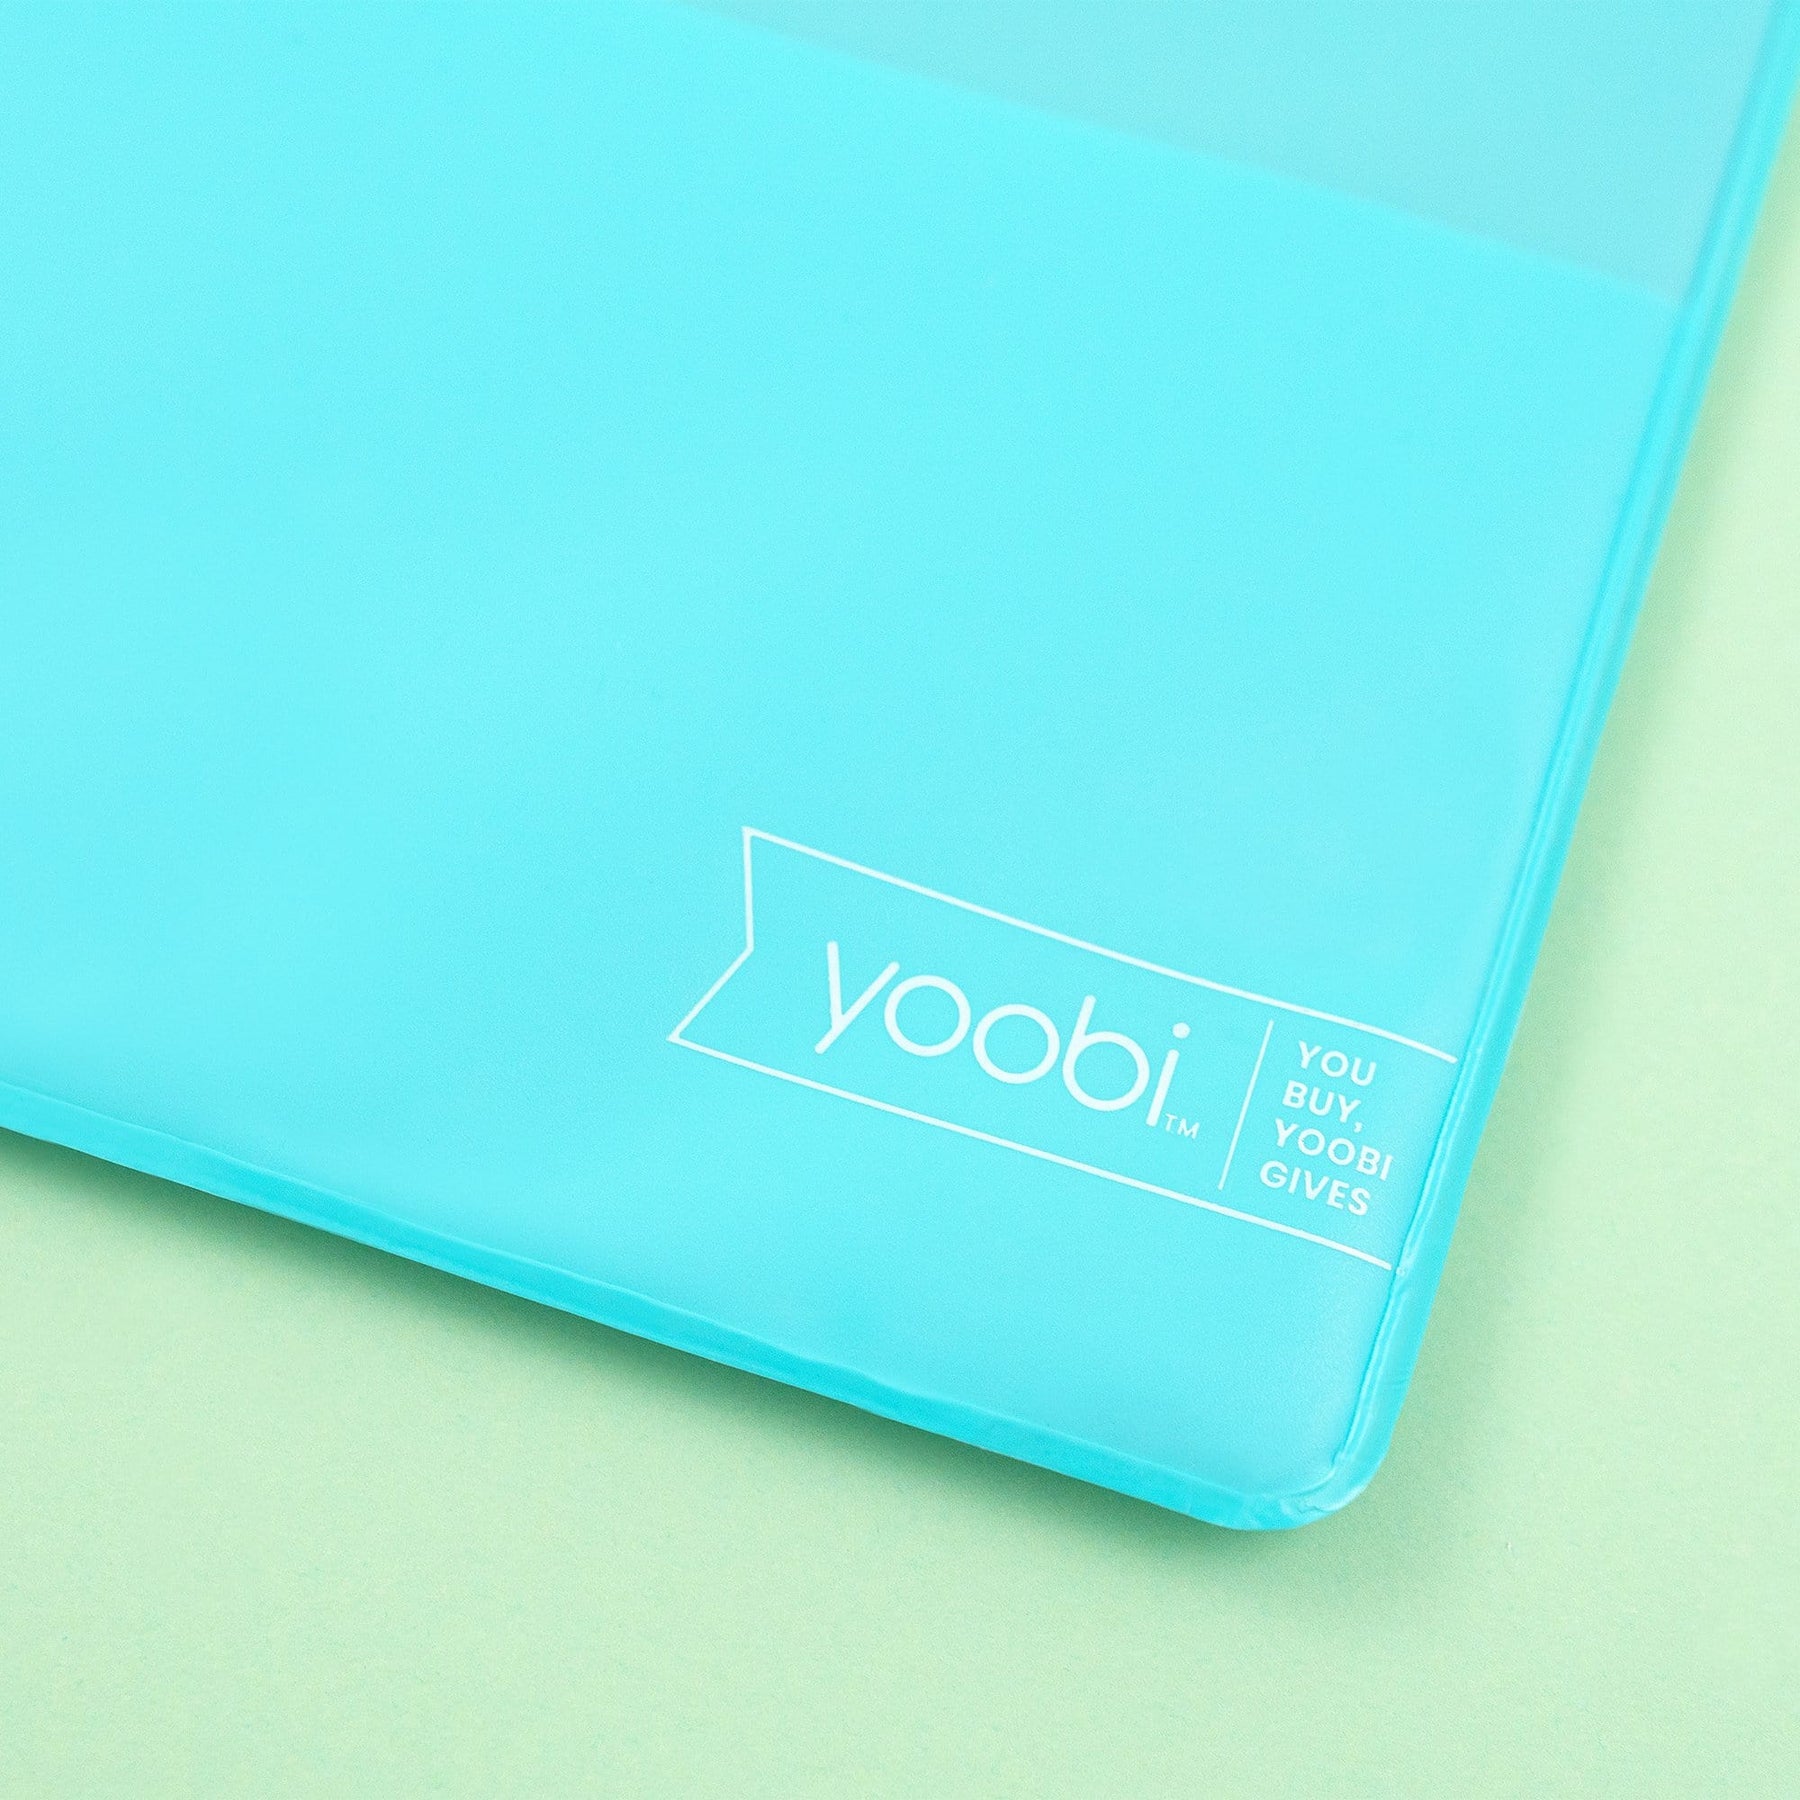 Yoobi 3 Ring Binder Zip Case ~Your Choice ~ 3 Variations ~ Brand